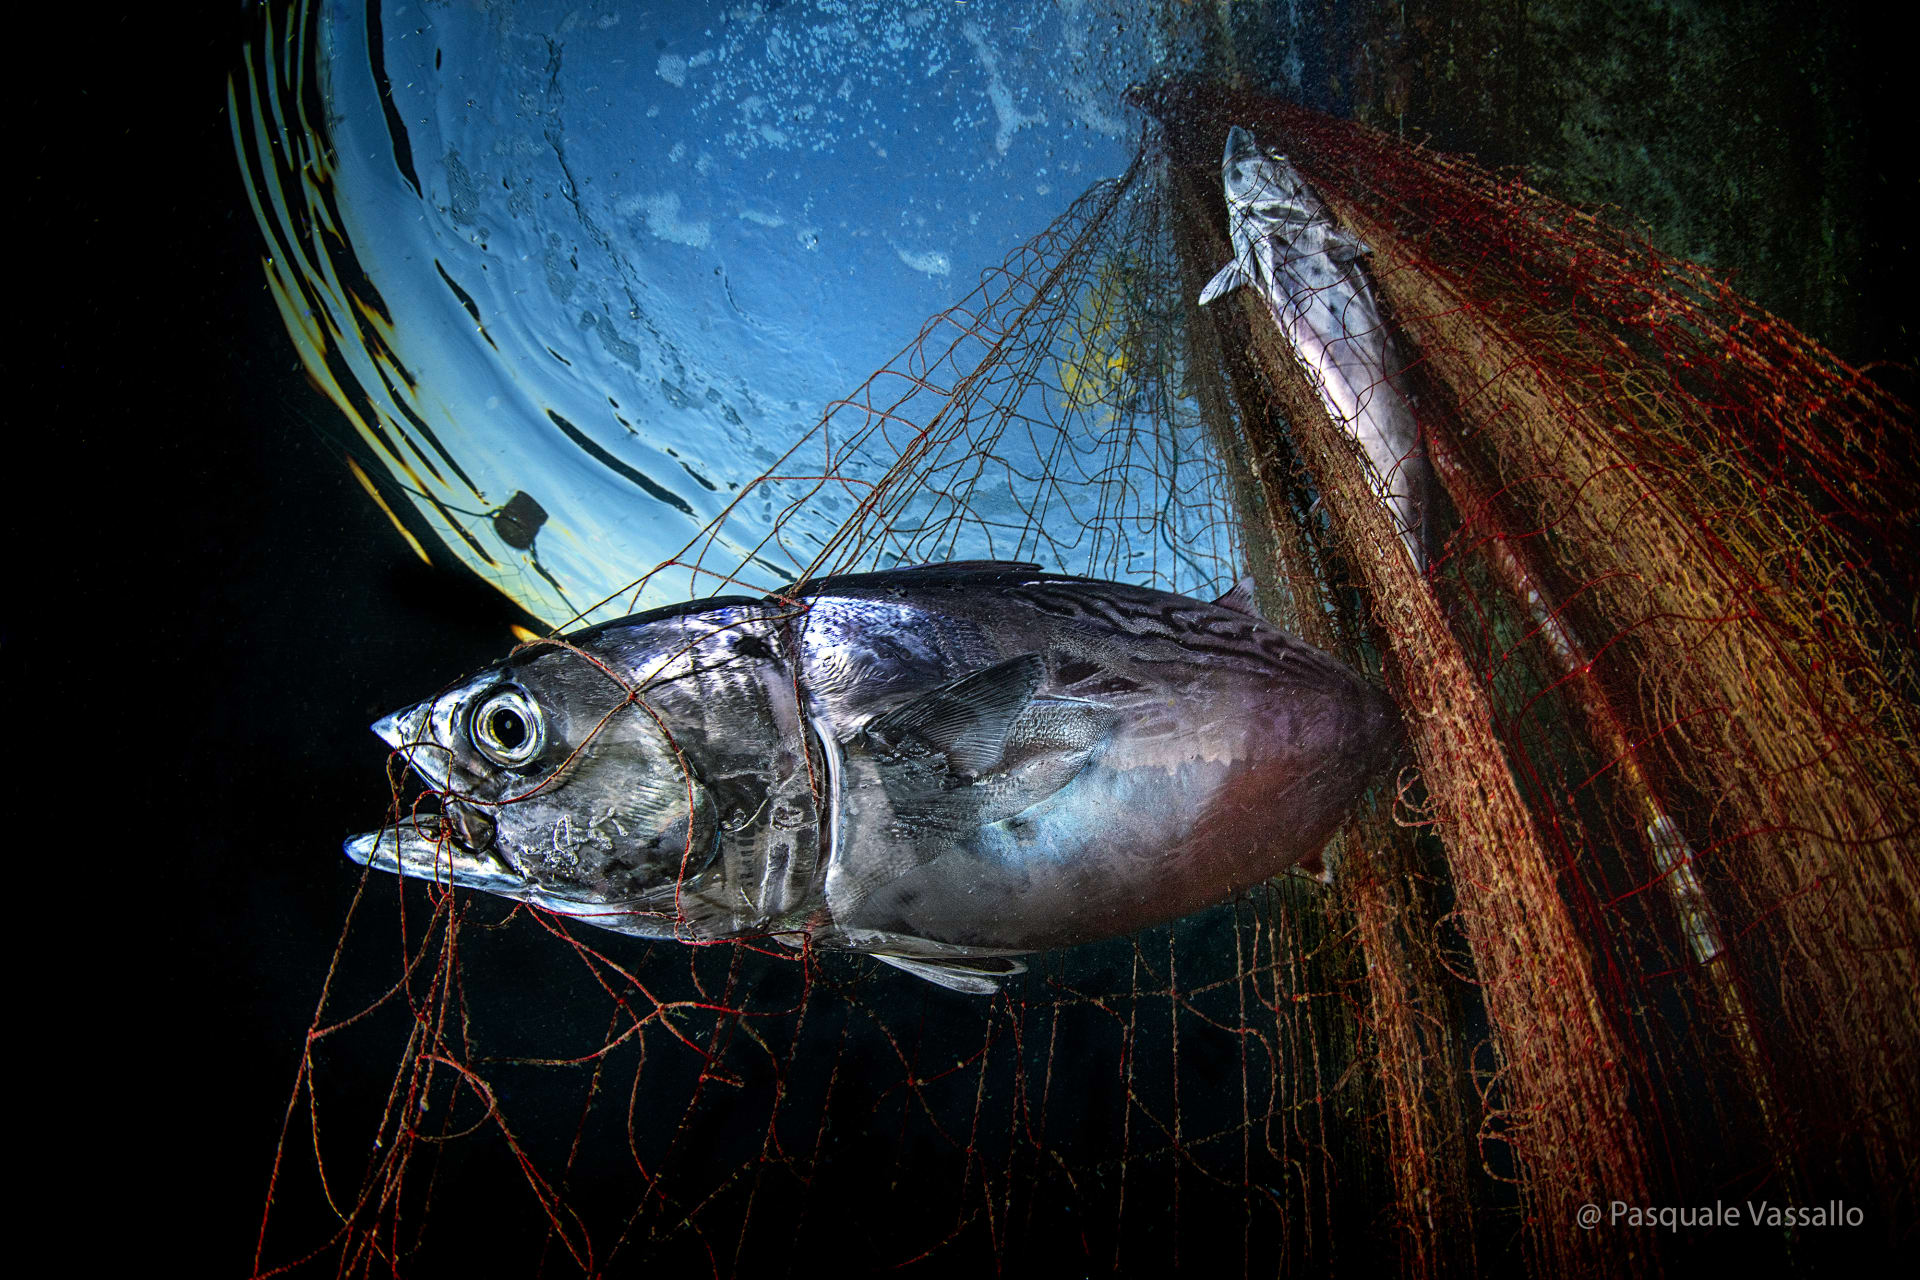 "قوة ومثابرة" تظهرها سمكة تونة عالقة في الشباك بمياه الأبيض المتوسط